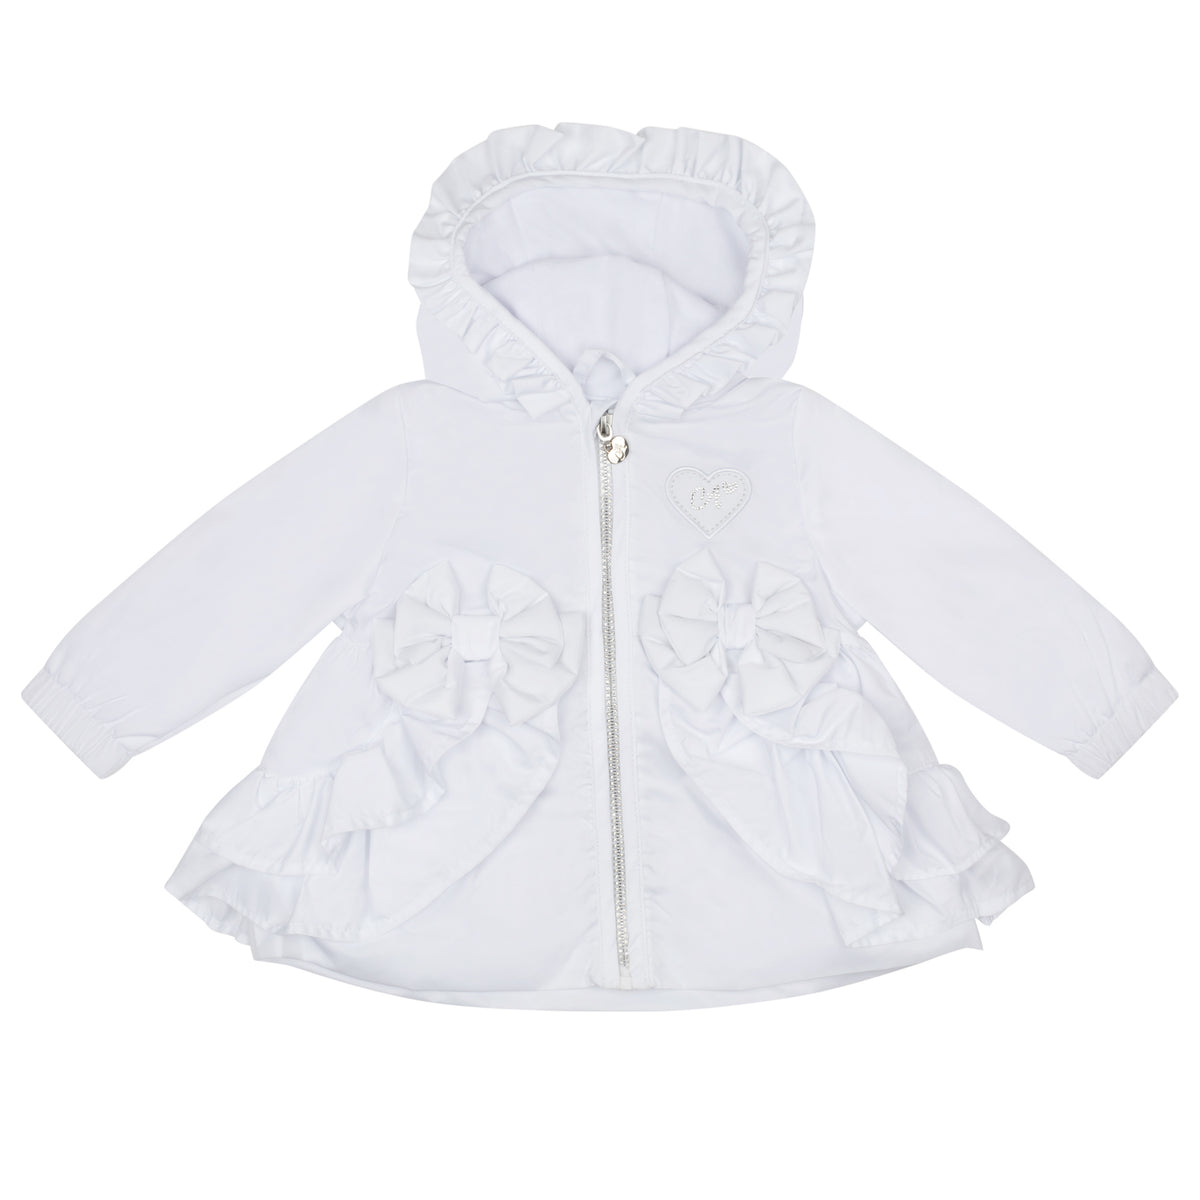 Little A Girls White 'Jillie' Frill Jacket